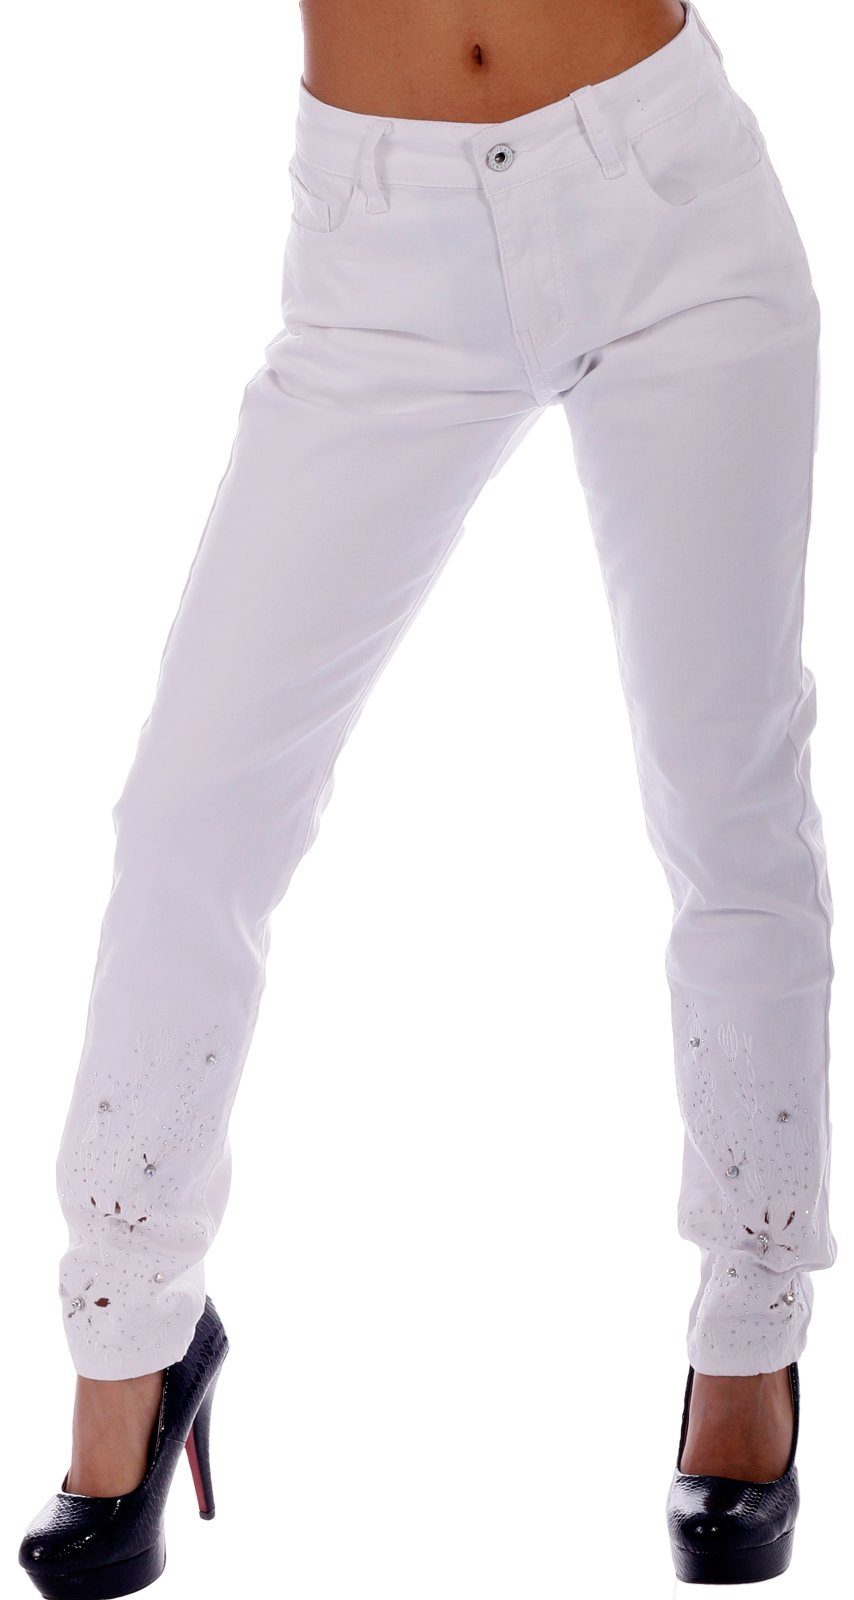 Charis Moda Bootcut-Jeans Jeans in Vintage Farben mit Stickerei-Bling Applikationen Weiß